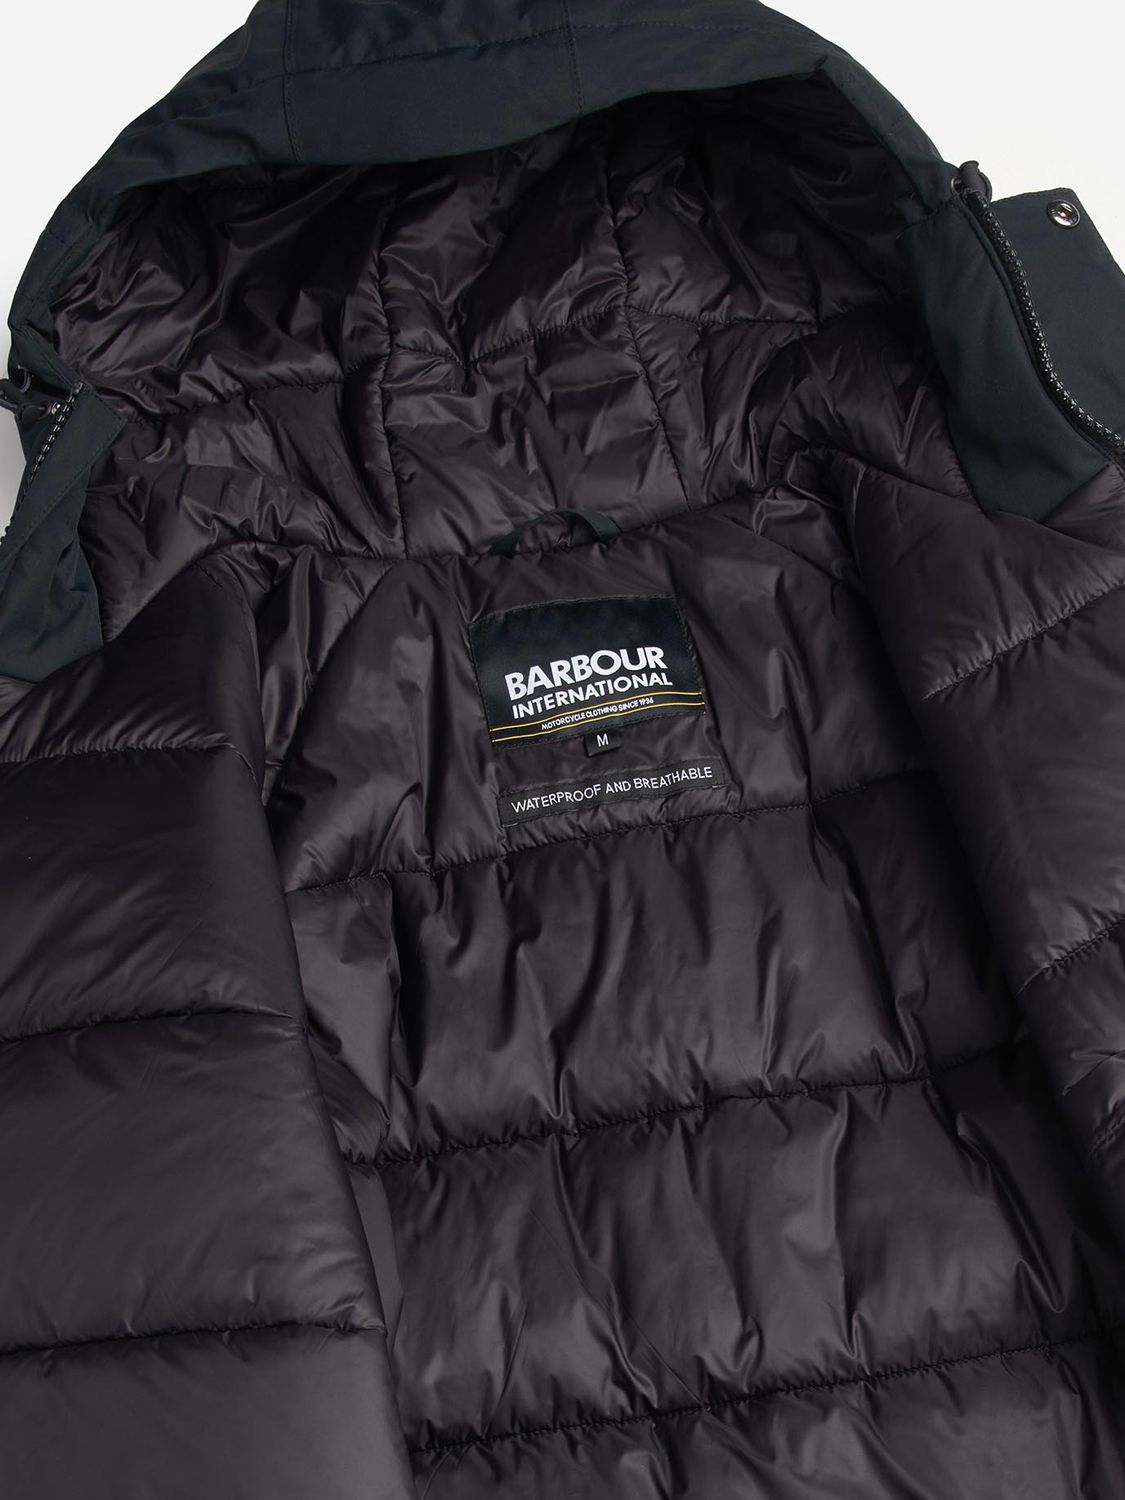 Barbour International Fleat Waterproof Jacket, Black